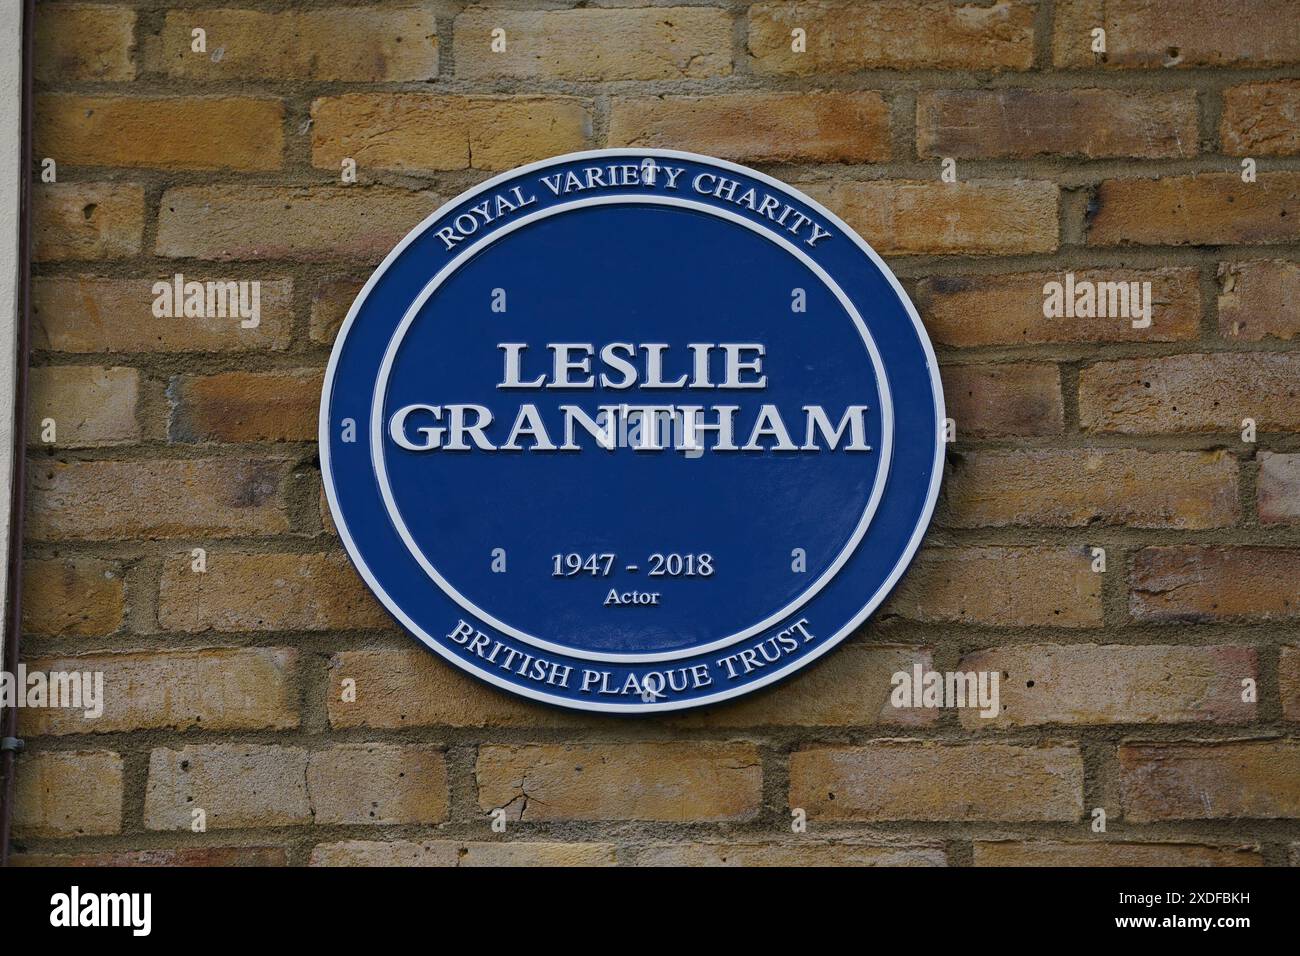 Une plaque bleue commémorant Leslie Grantham a été dévoilée au cours d'une cérémonie dans le domaine de la maison de soins résidentielle du Royal Variety Charity, Brinsworth House, à Twickenham. Date de la photo : samedi 22 juin 2024. Banque D'Images